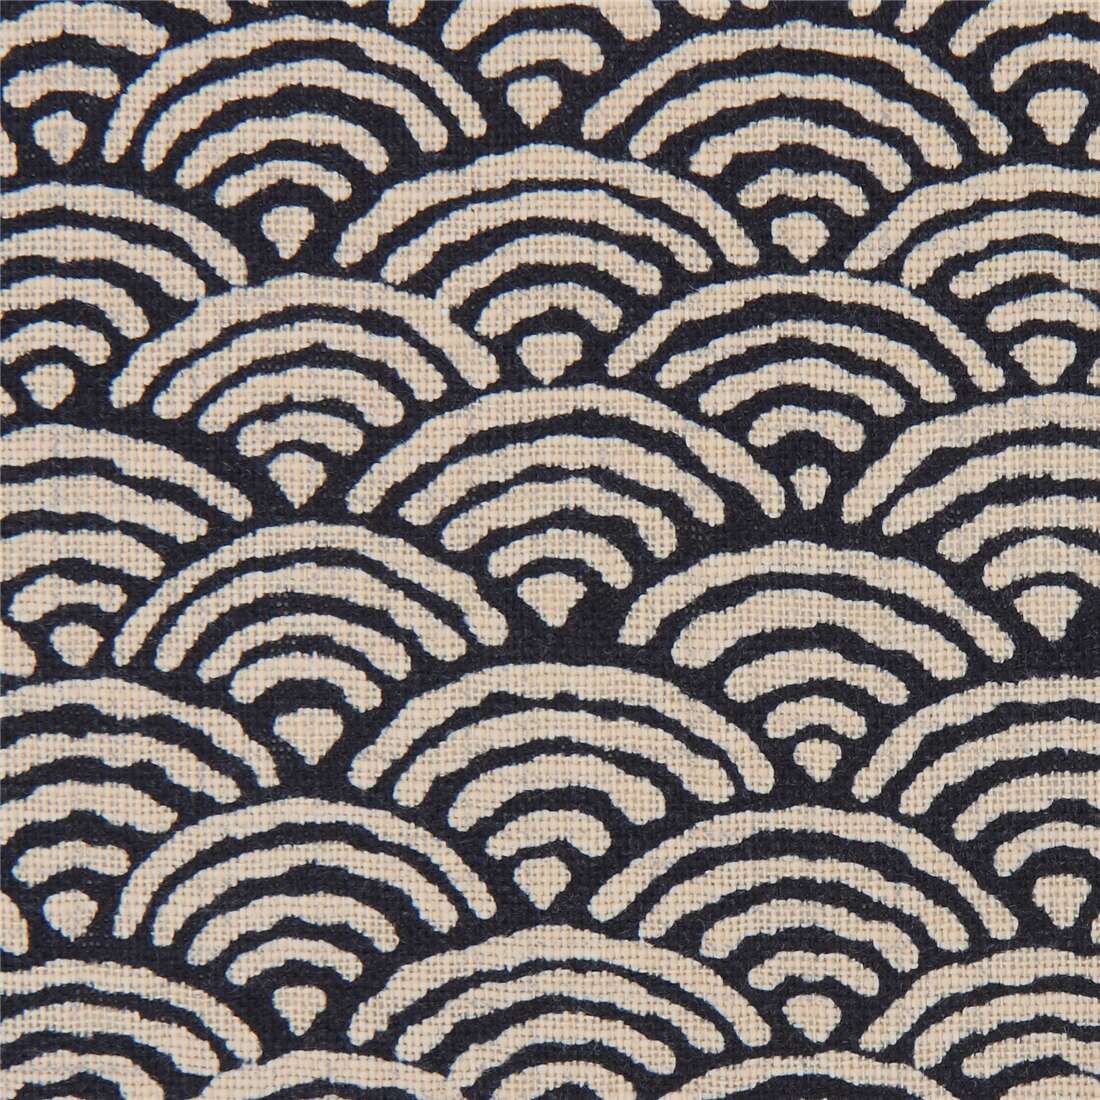 Blue fan shape pattern cotton fabric.